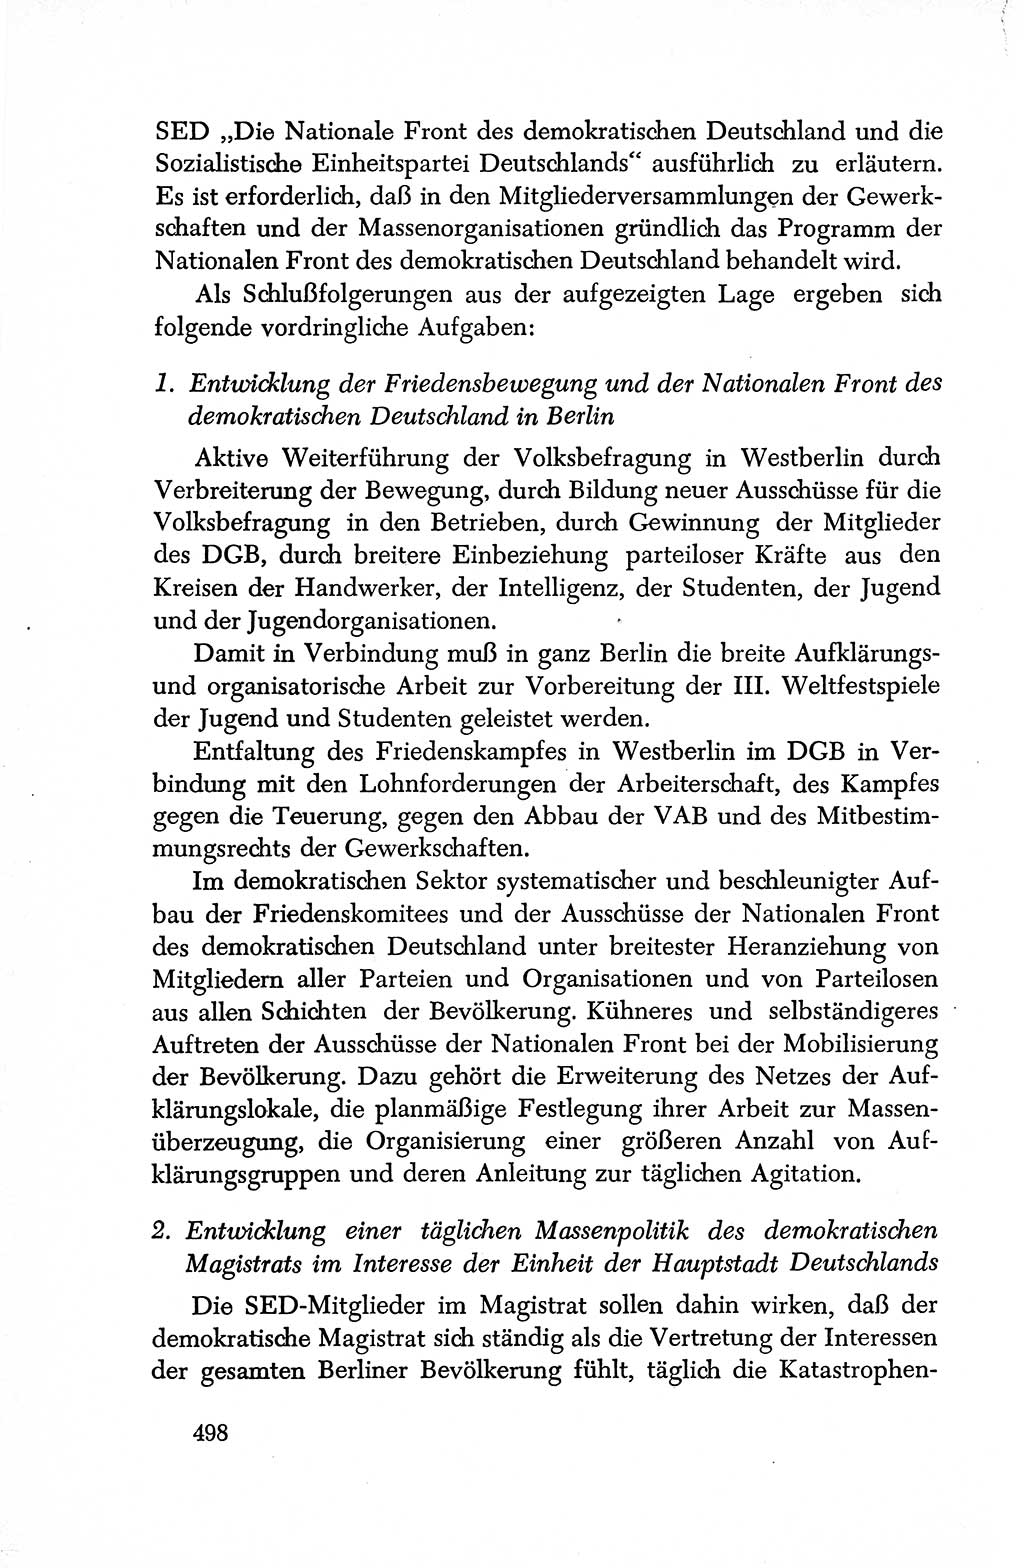 Dokumente der Sozialistischen Einheitspartei Deutschlands (SED) [Deutsche Demokratische Republik (DDR)] 1950-1952, Seite 498 (Dok. SED DDR 1950-1952, S. 498)